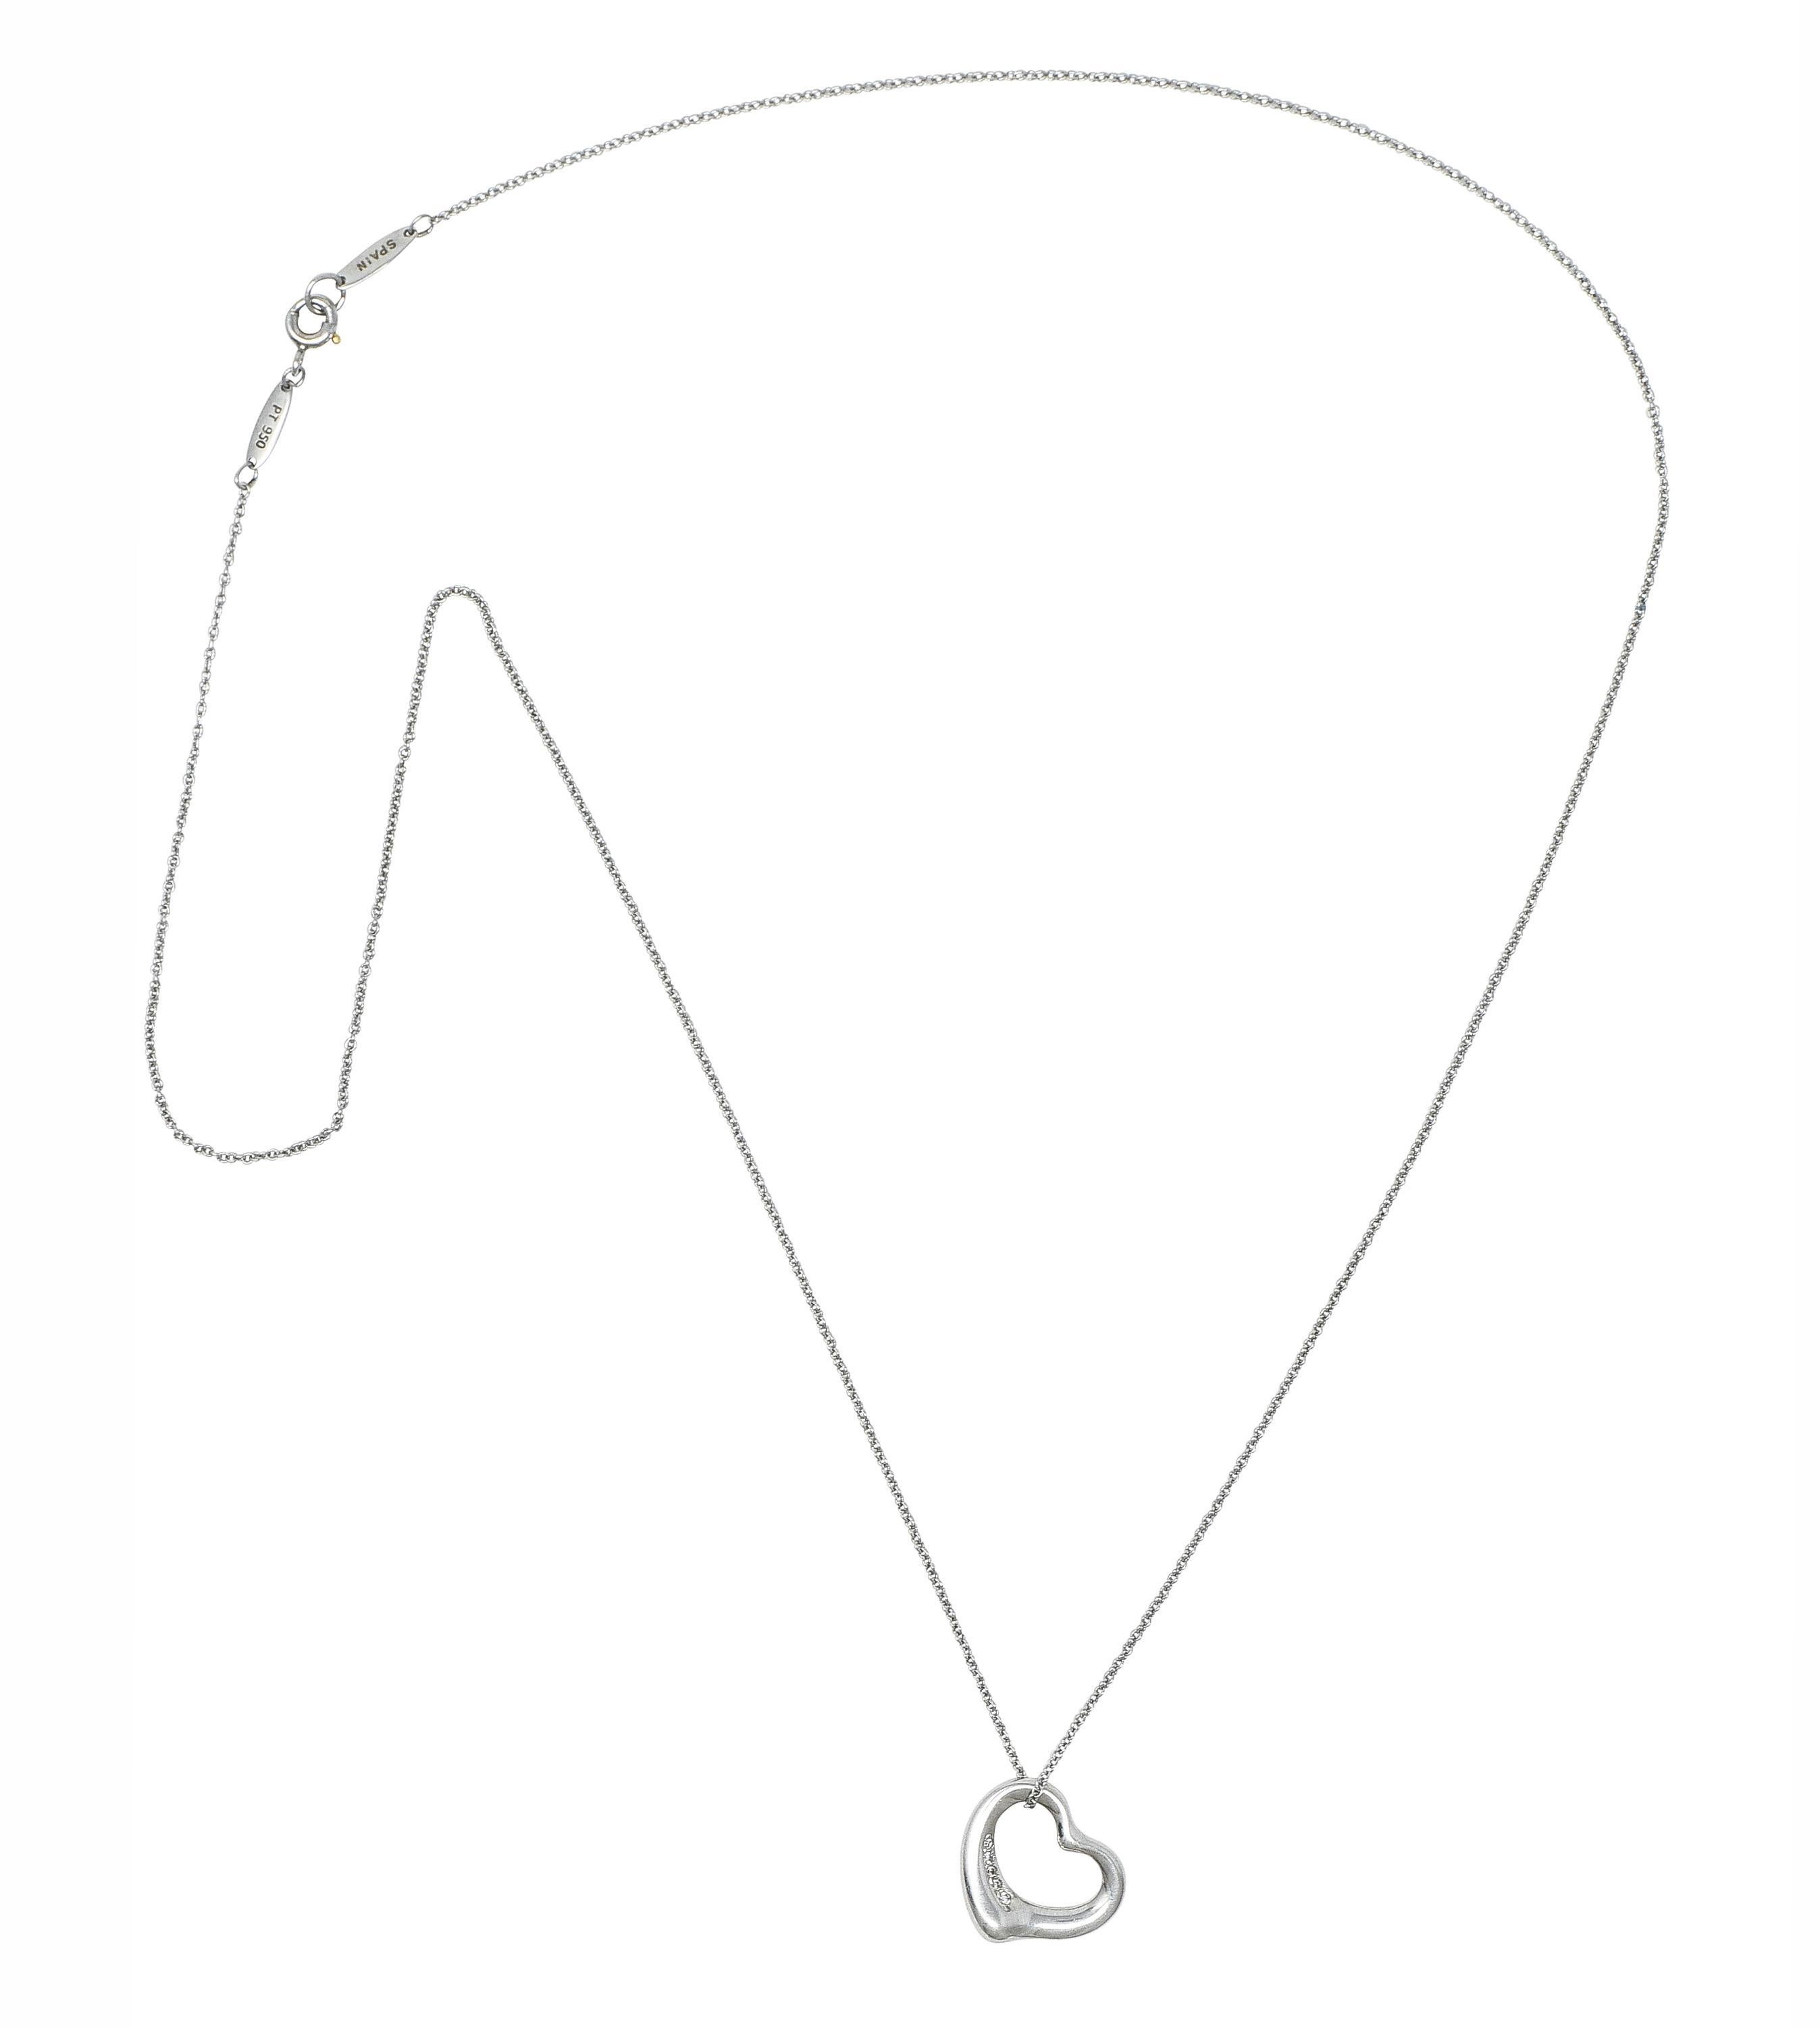 Entworfen als 1,0-mm-Kabelkette, an der ein durchbrochener offener Herzanhänger hängt.
Gewunden mit perlenbesetzten runden Diamanten im Brillantschliff 
Mit einem Gesamtgewicht von etwa 0,02 Karat 
Augensauber und hell
Vervollständigt durch einen